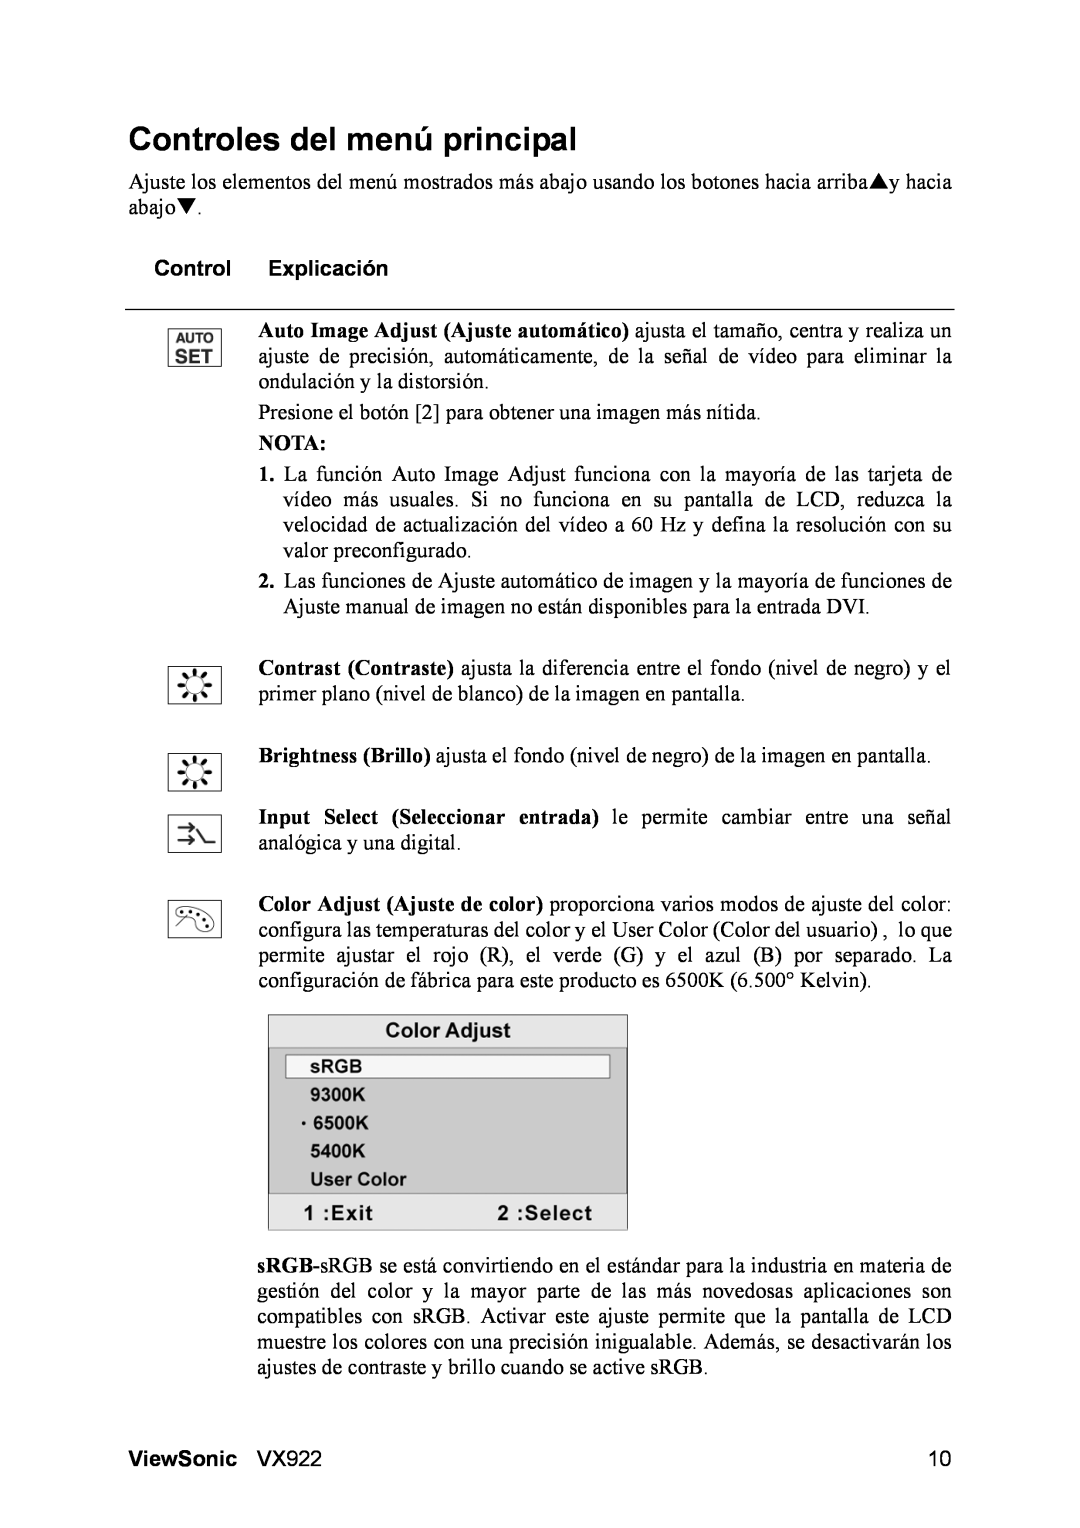 ViewSonic VX922 manual Controles del menú principal, Control Explicación, ViewSonic 